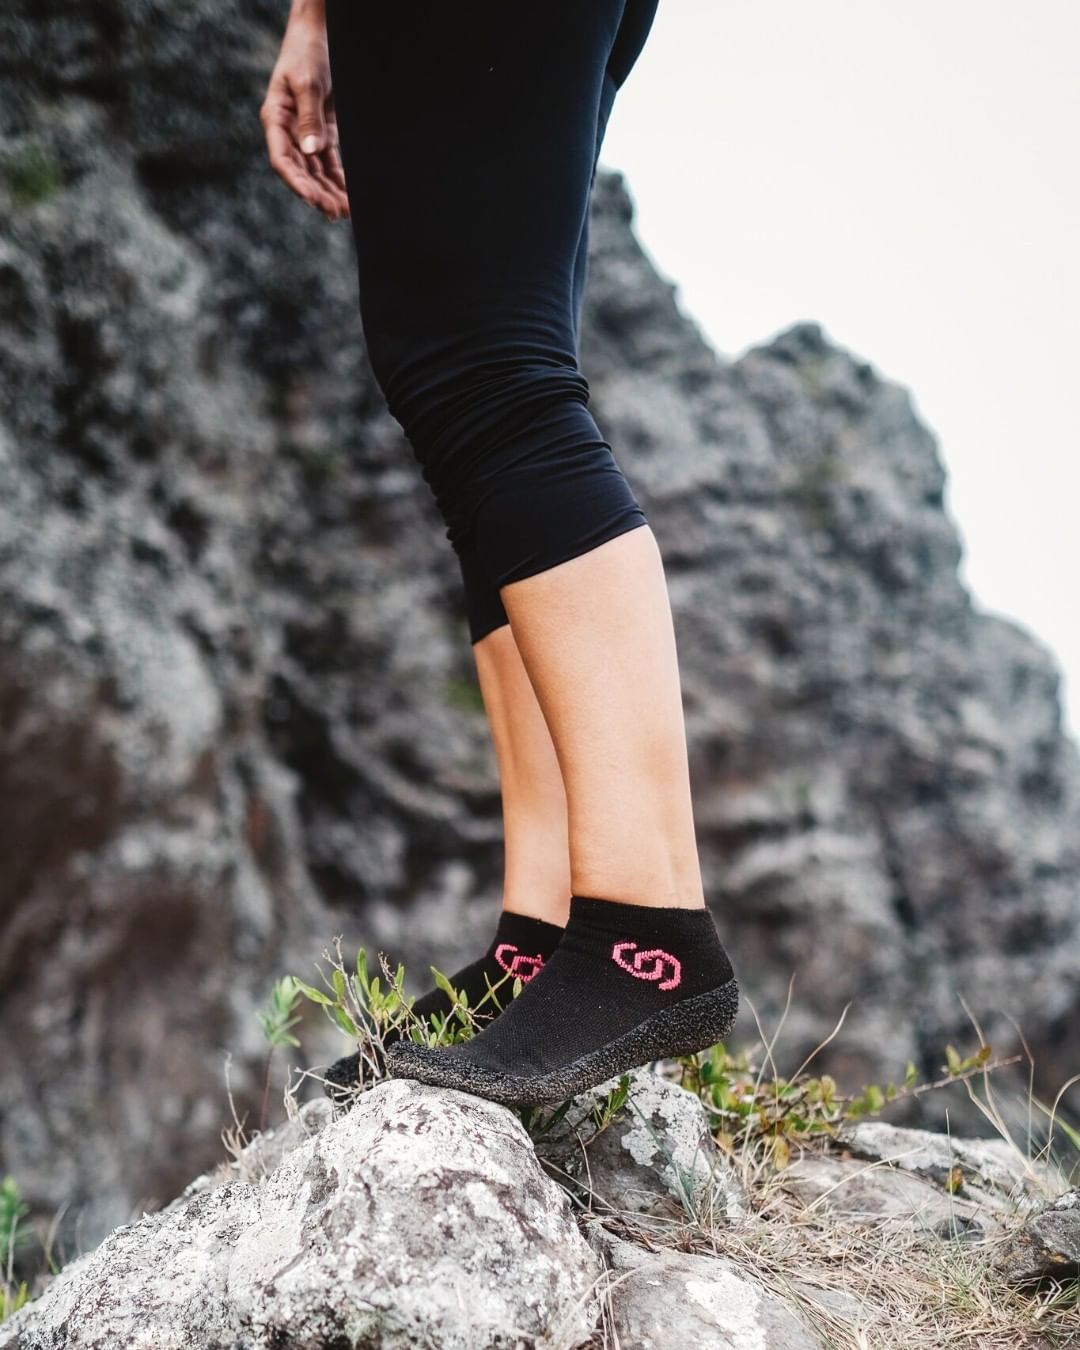 Una reflexión sobre el uso del calzado minimalista en el running